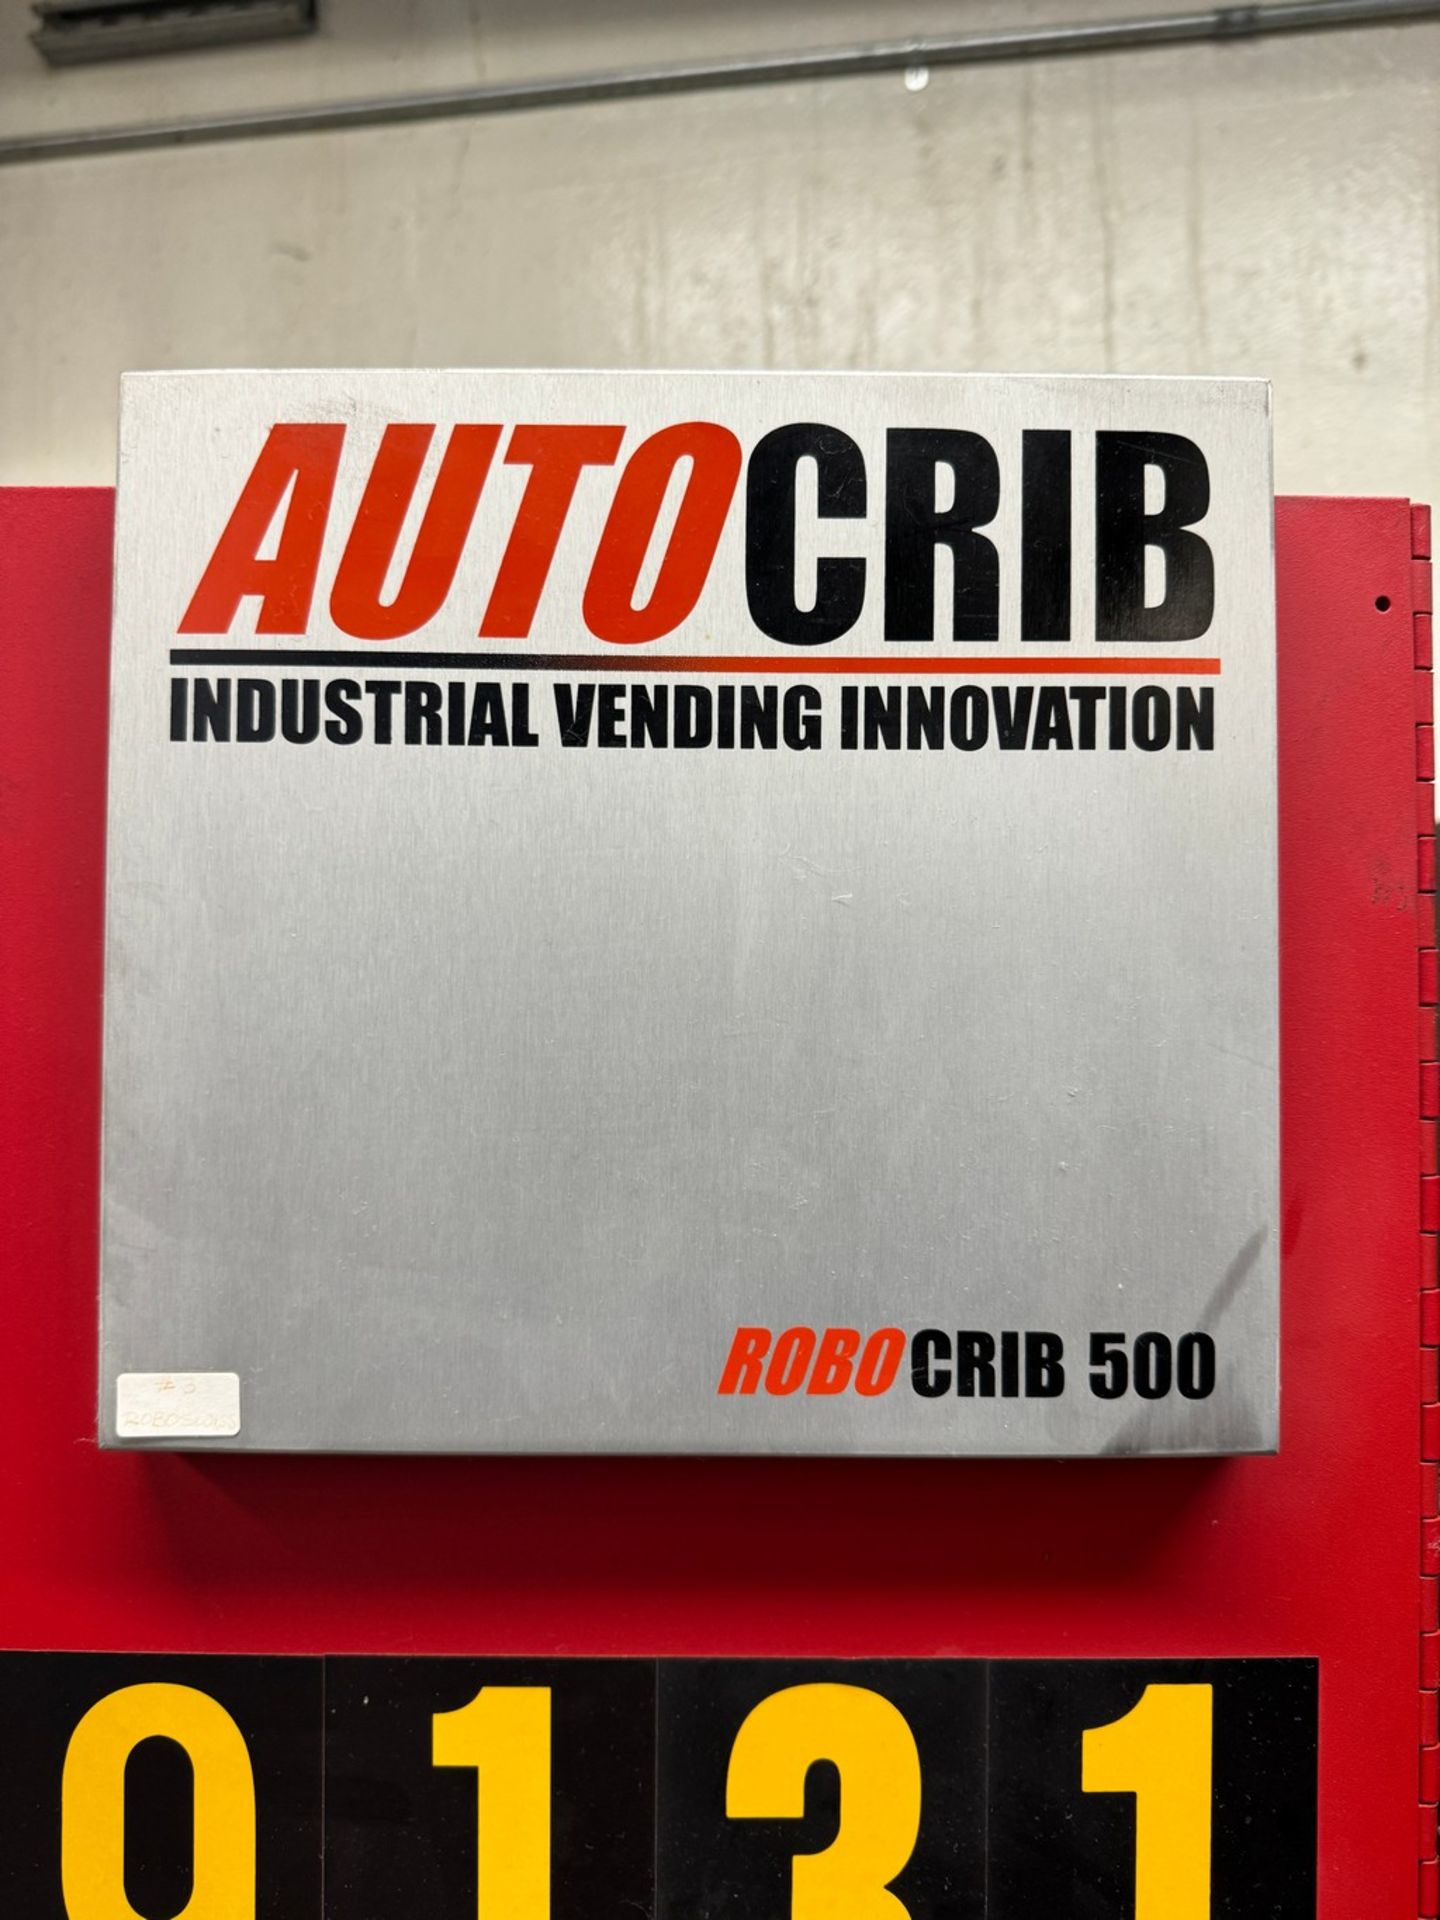 AutoCrib RoboCrib 500 Industrial Tool Dispensing Machine - Image 2 of 5